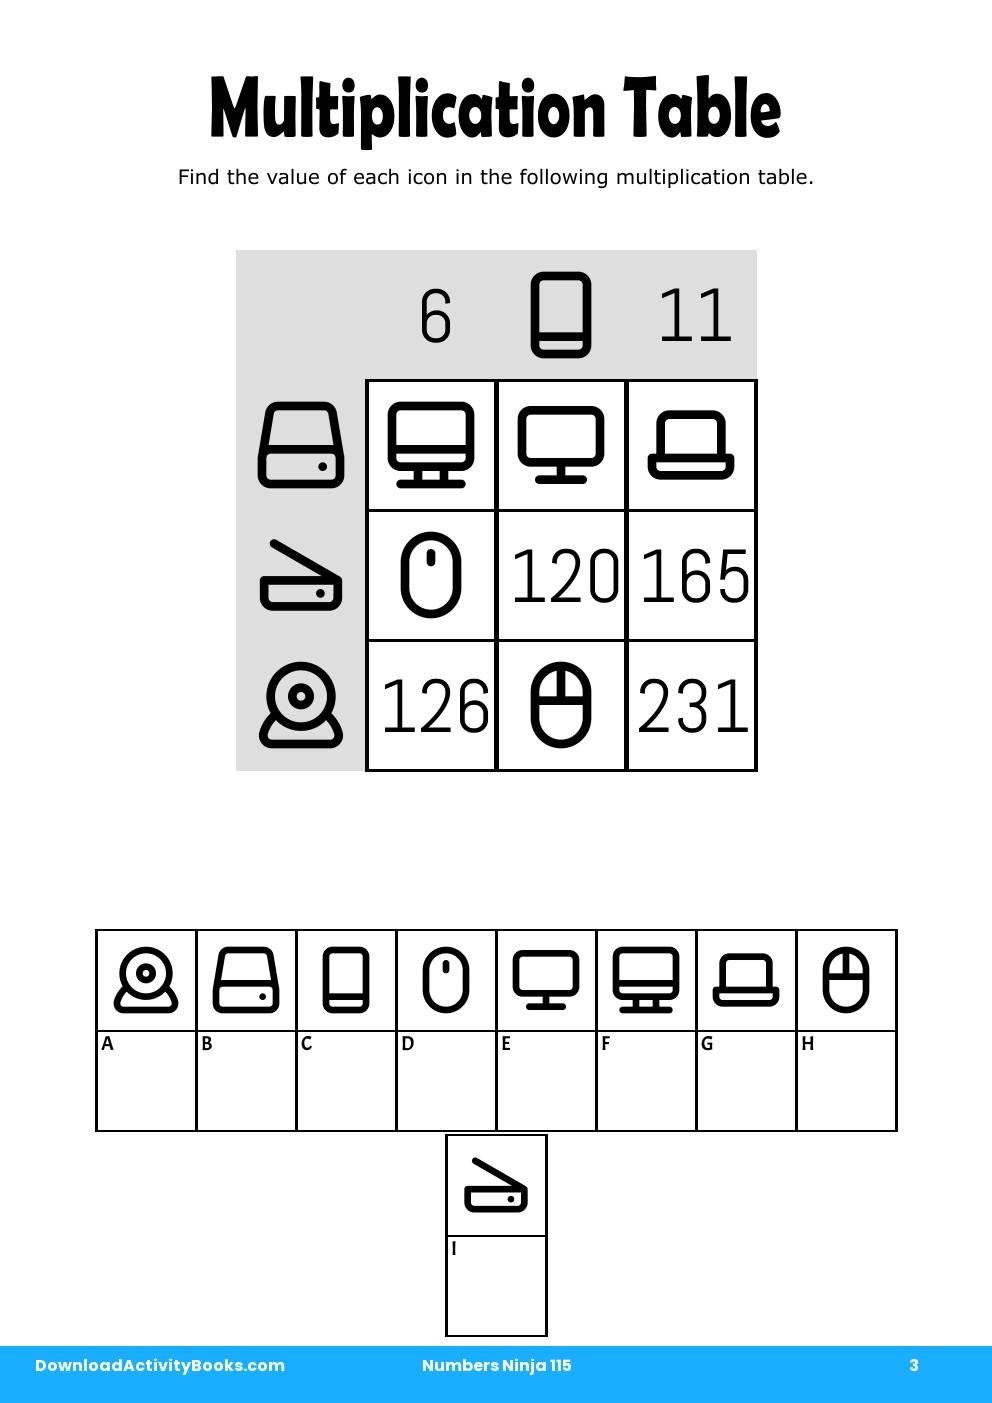 Multiplication Table in Numbers Ninja 115